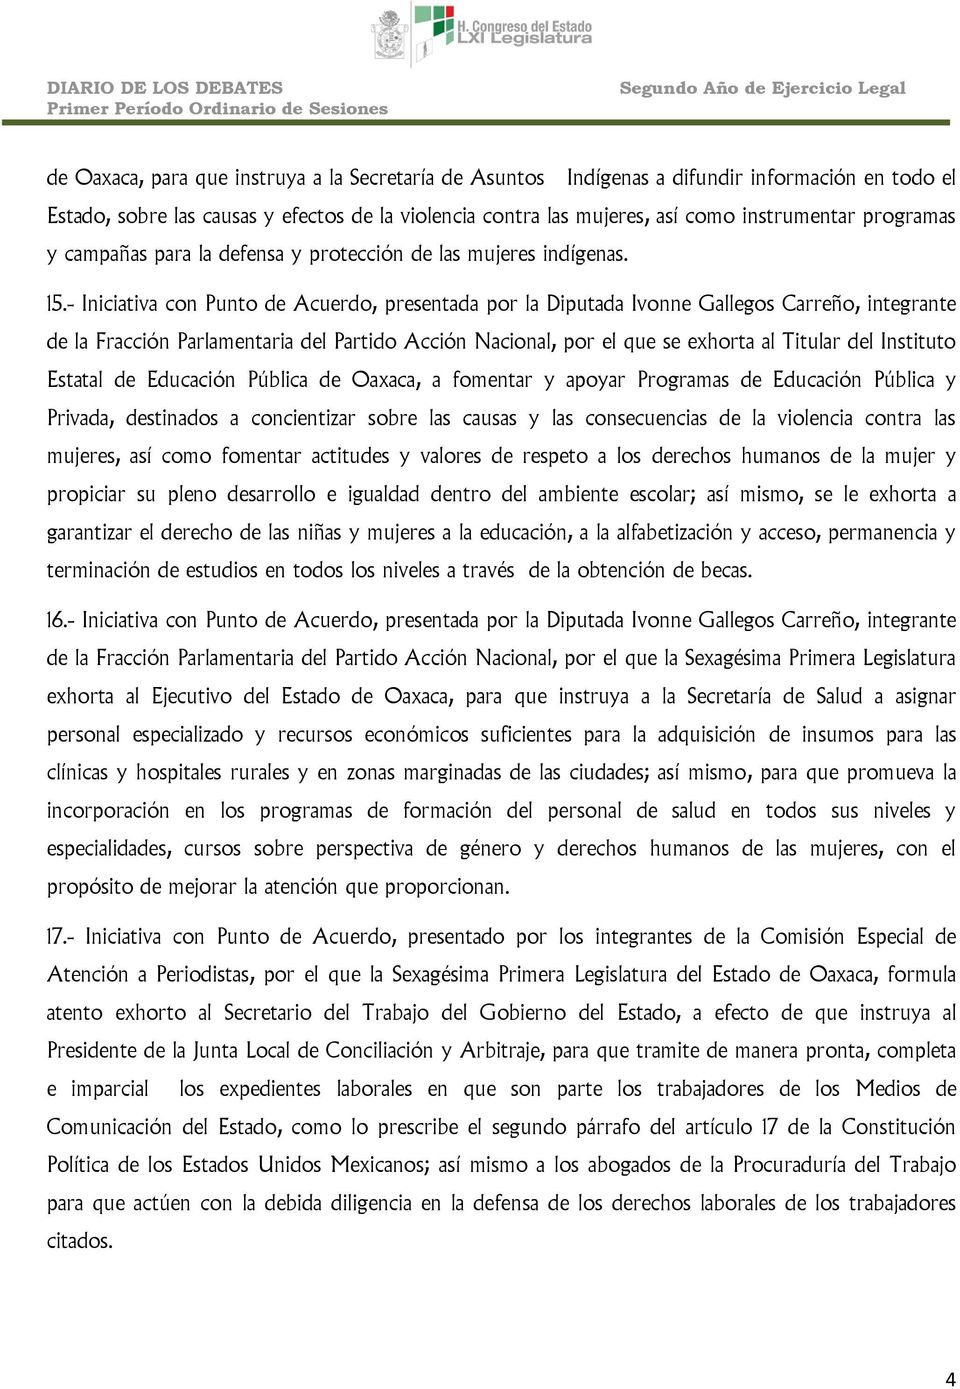 - Iniciativa con Punto de Acuerdo, presentada por la Diputada Ivonne Gallegos Carreño, integrante de la Fracción Parlamentaria del Partido Acción Nacional, por el que se exhorta al Titular del